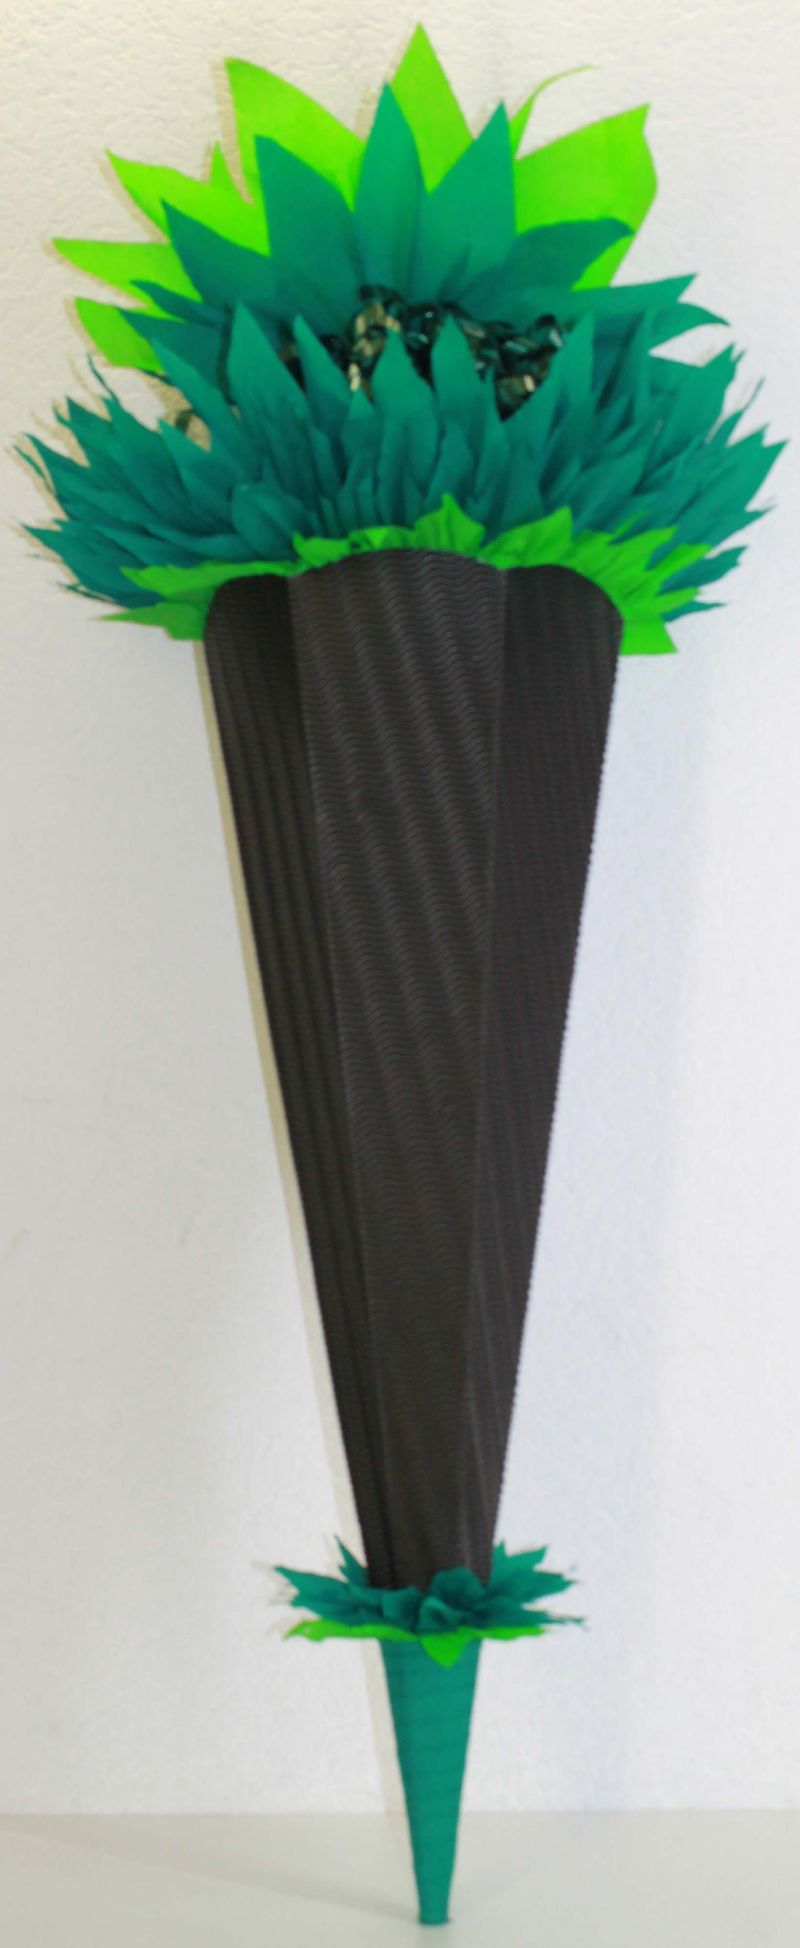  - Schultüte Zuckertüte Rohling zum selbst verzieren Rohling 70 75 80 85 90 100 cm / 1m für Jungen HANDARBEIT moosgrün schwarz grün